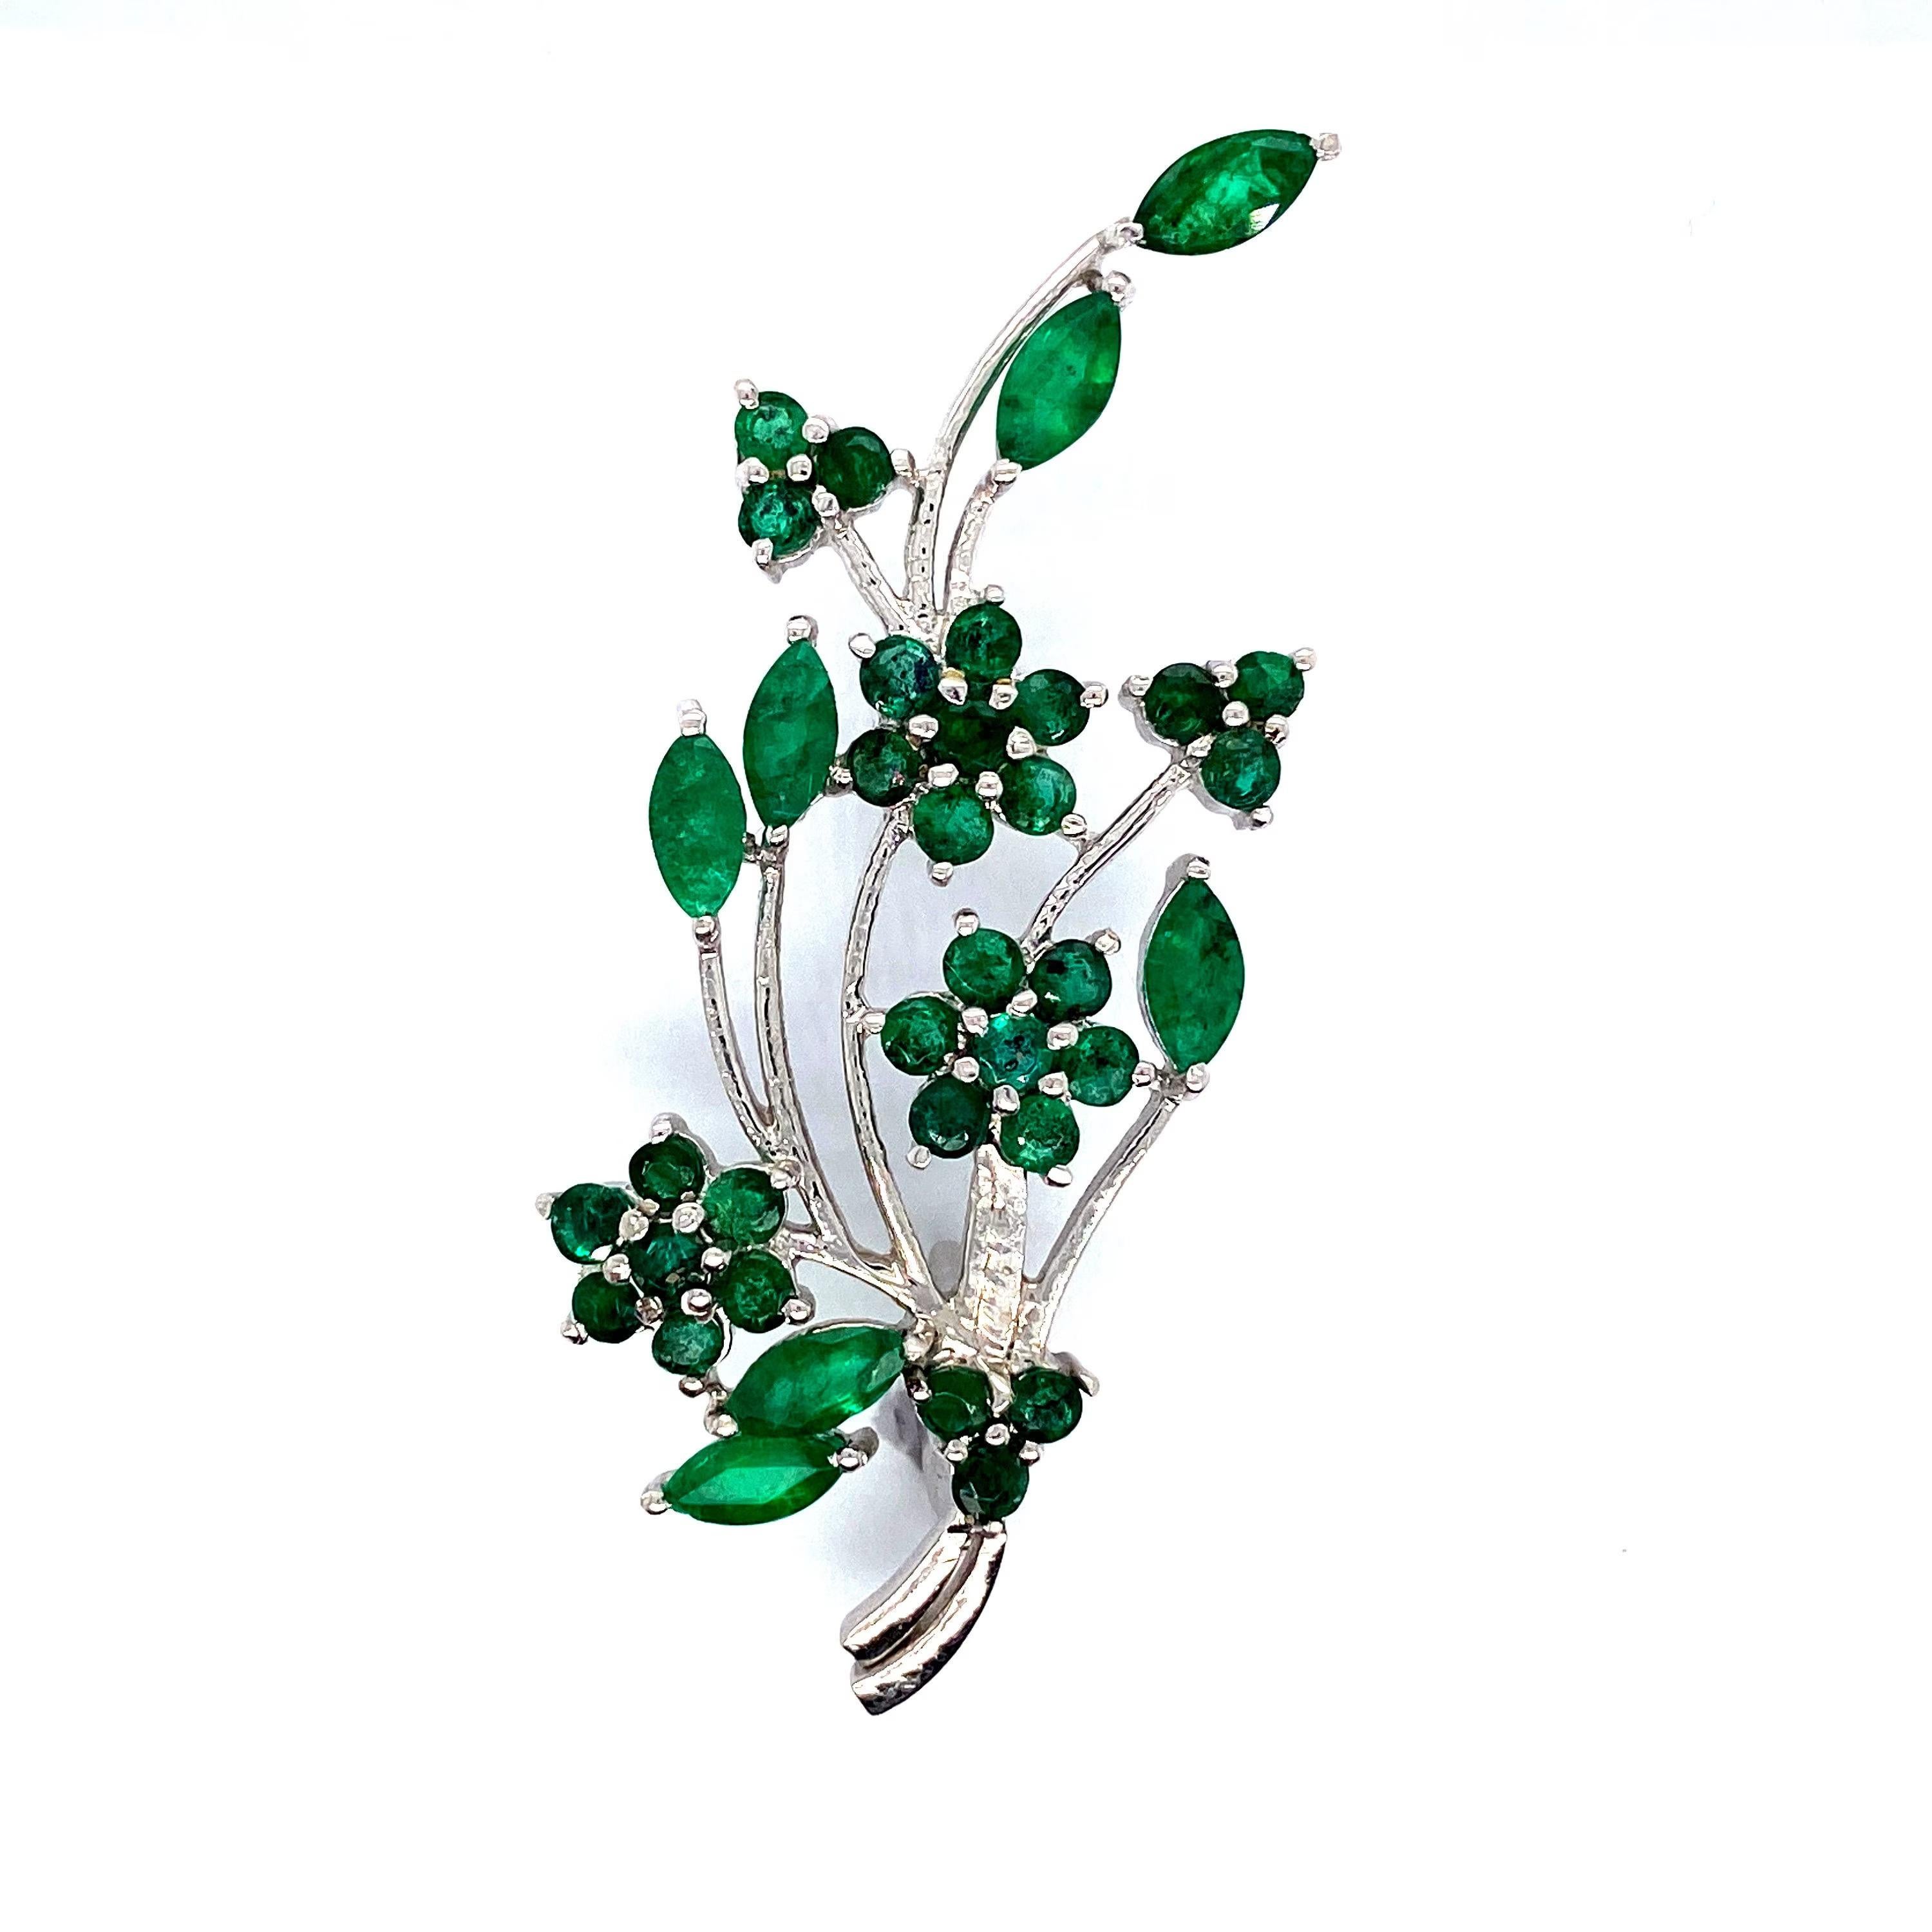 Diese handgefertigte, florale Unisex-Brosche mit echtem Smaragd wertet Ihre Kleidung auf und ist perfekt, um jedem Outfit einen Hauch von Eleganz und Charme zu verleihen. Mit exquisiter Handwerkskunst gefertigt und mit einem schillernden Smaragd